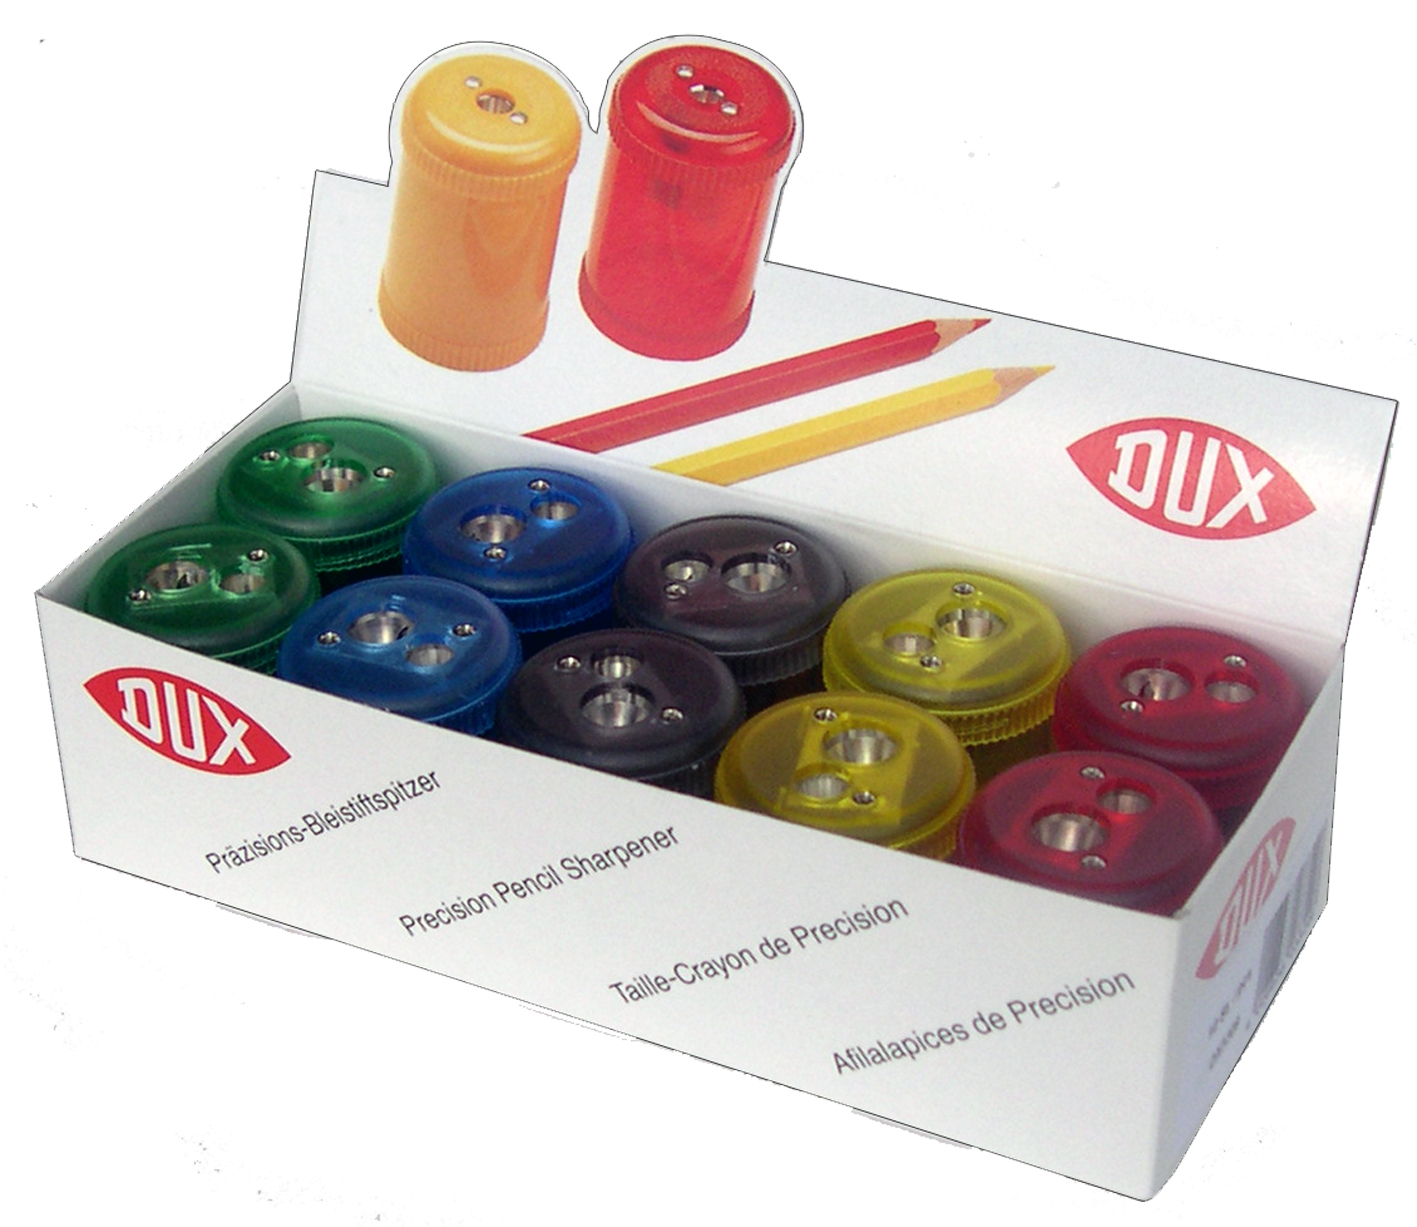 DUX Taille-crayon DX5309/D10 10 pcs., couleurs ass.